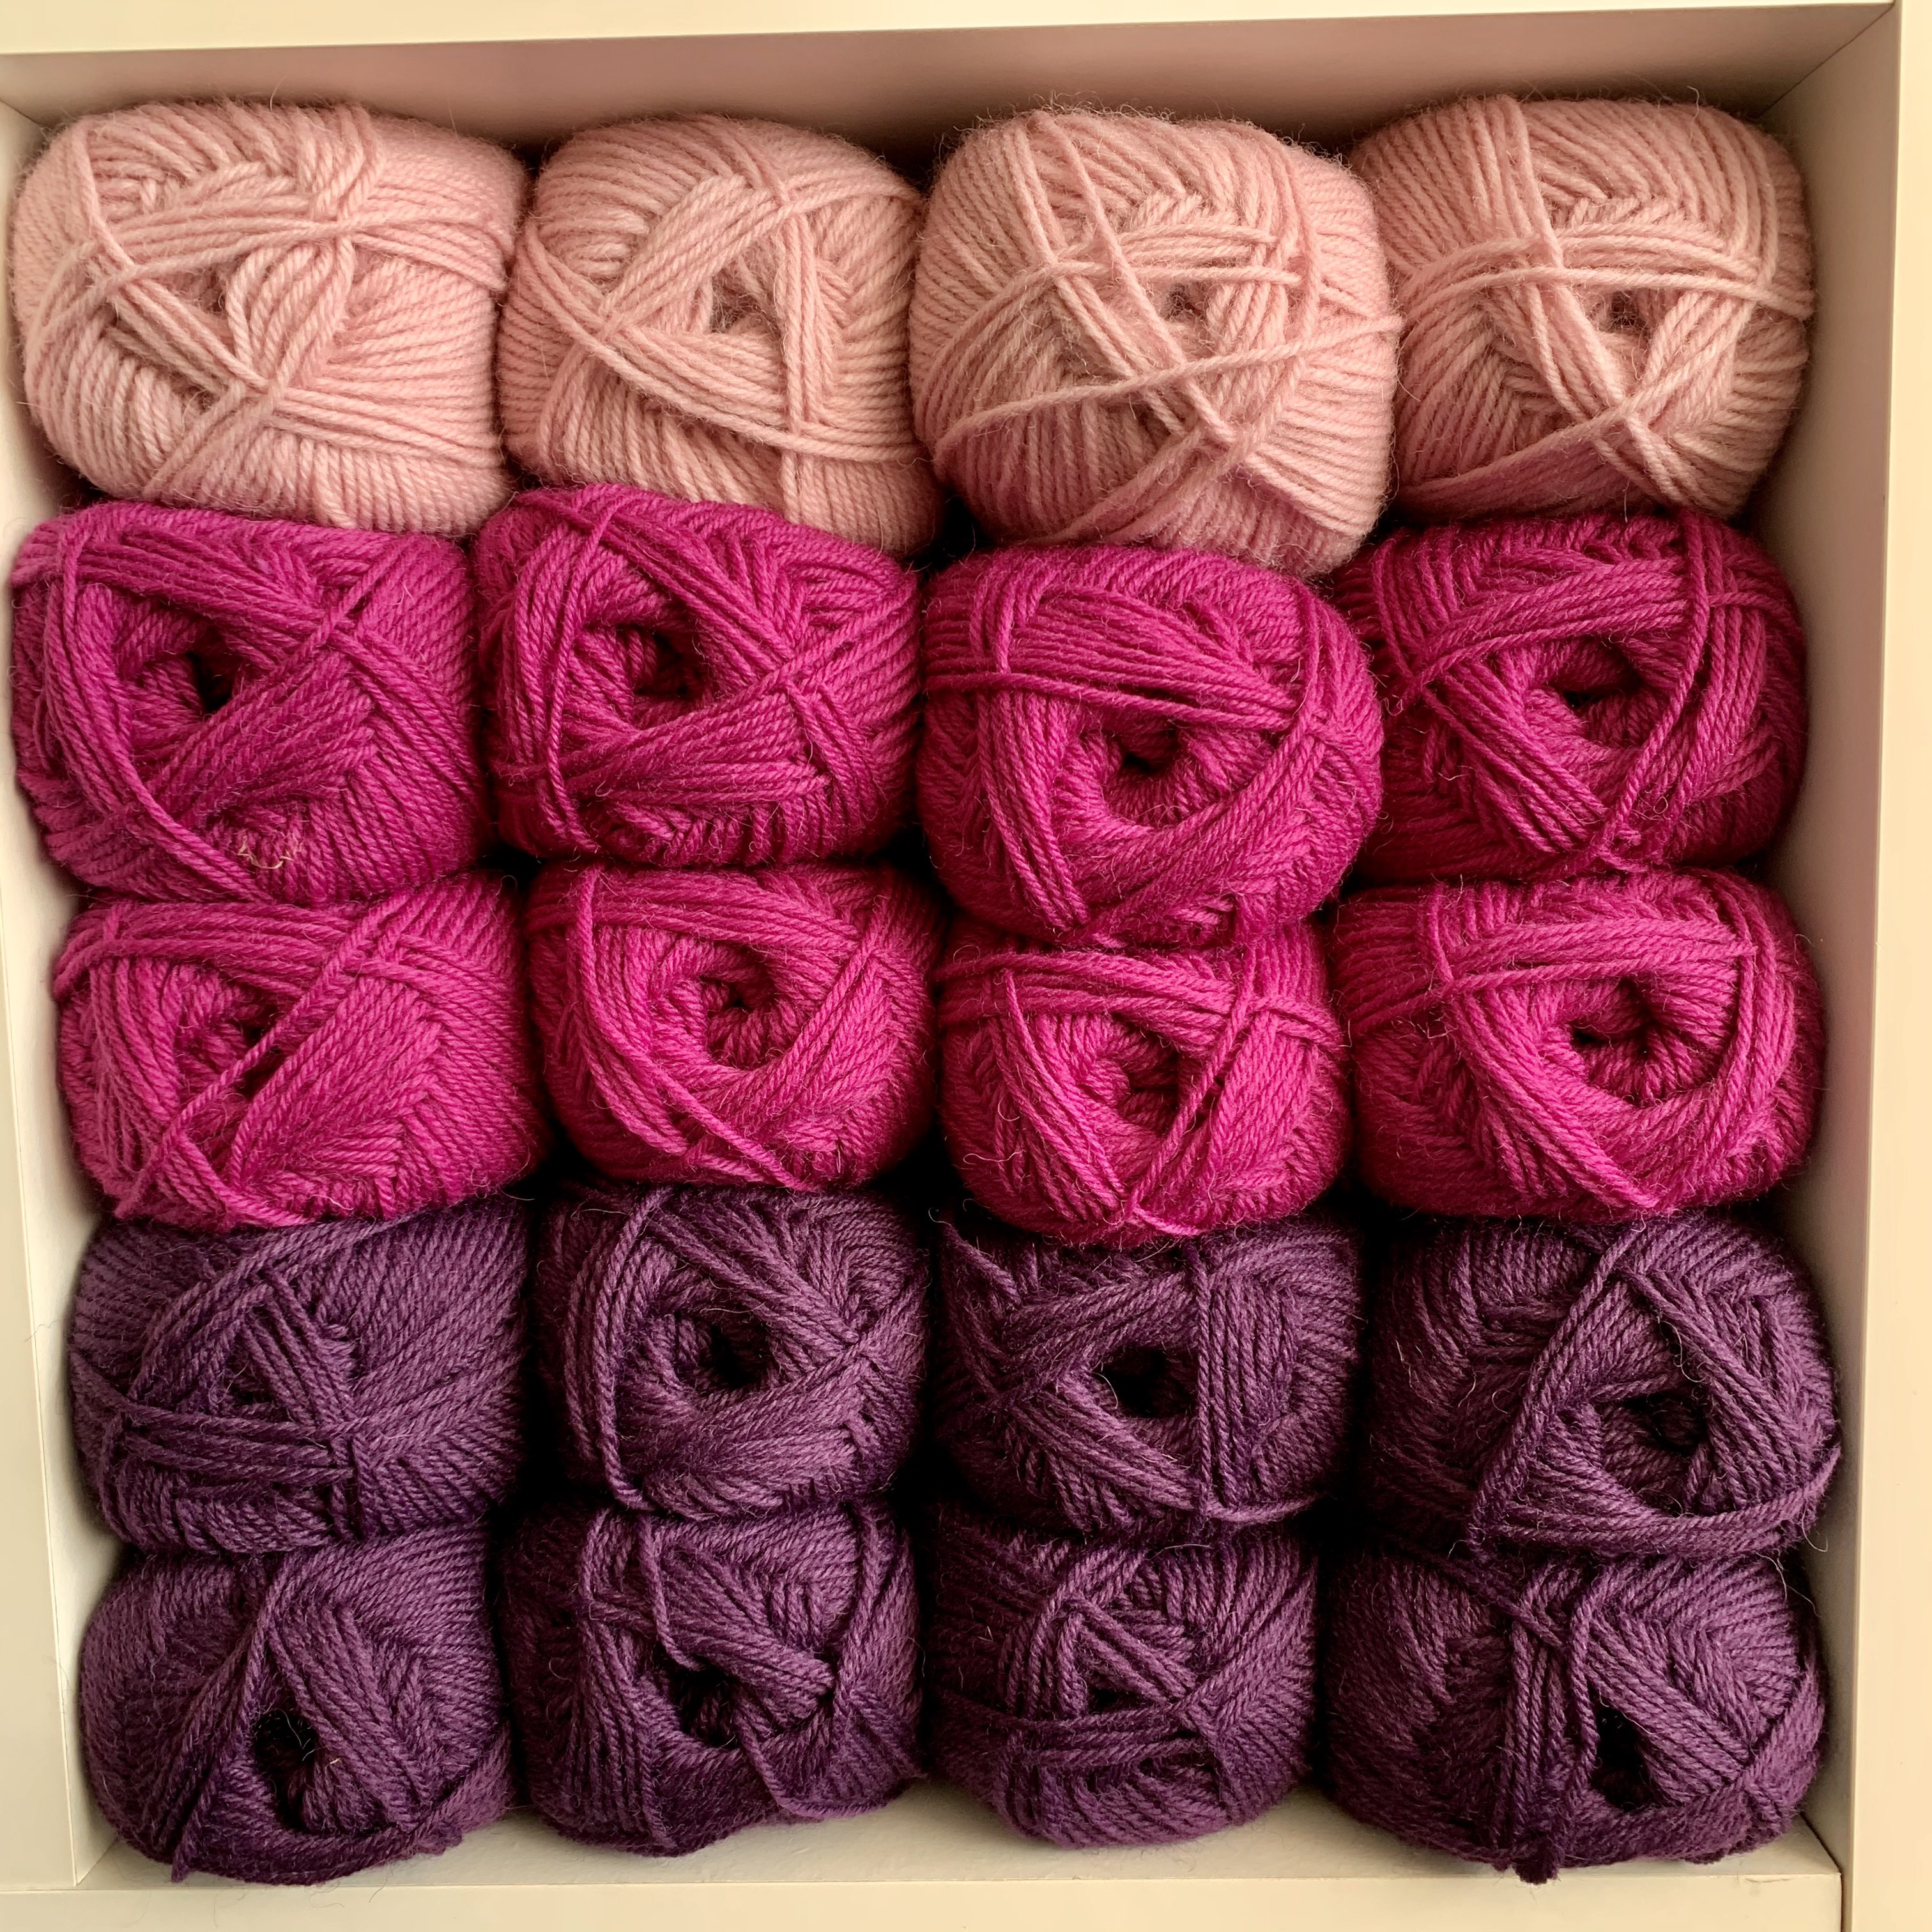 pink wool on a shelf